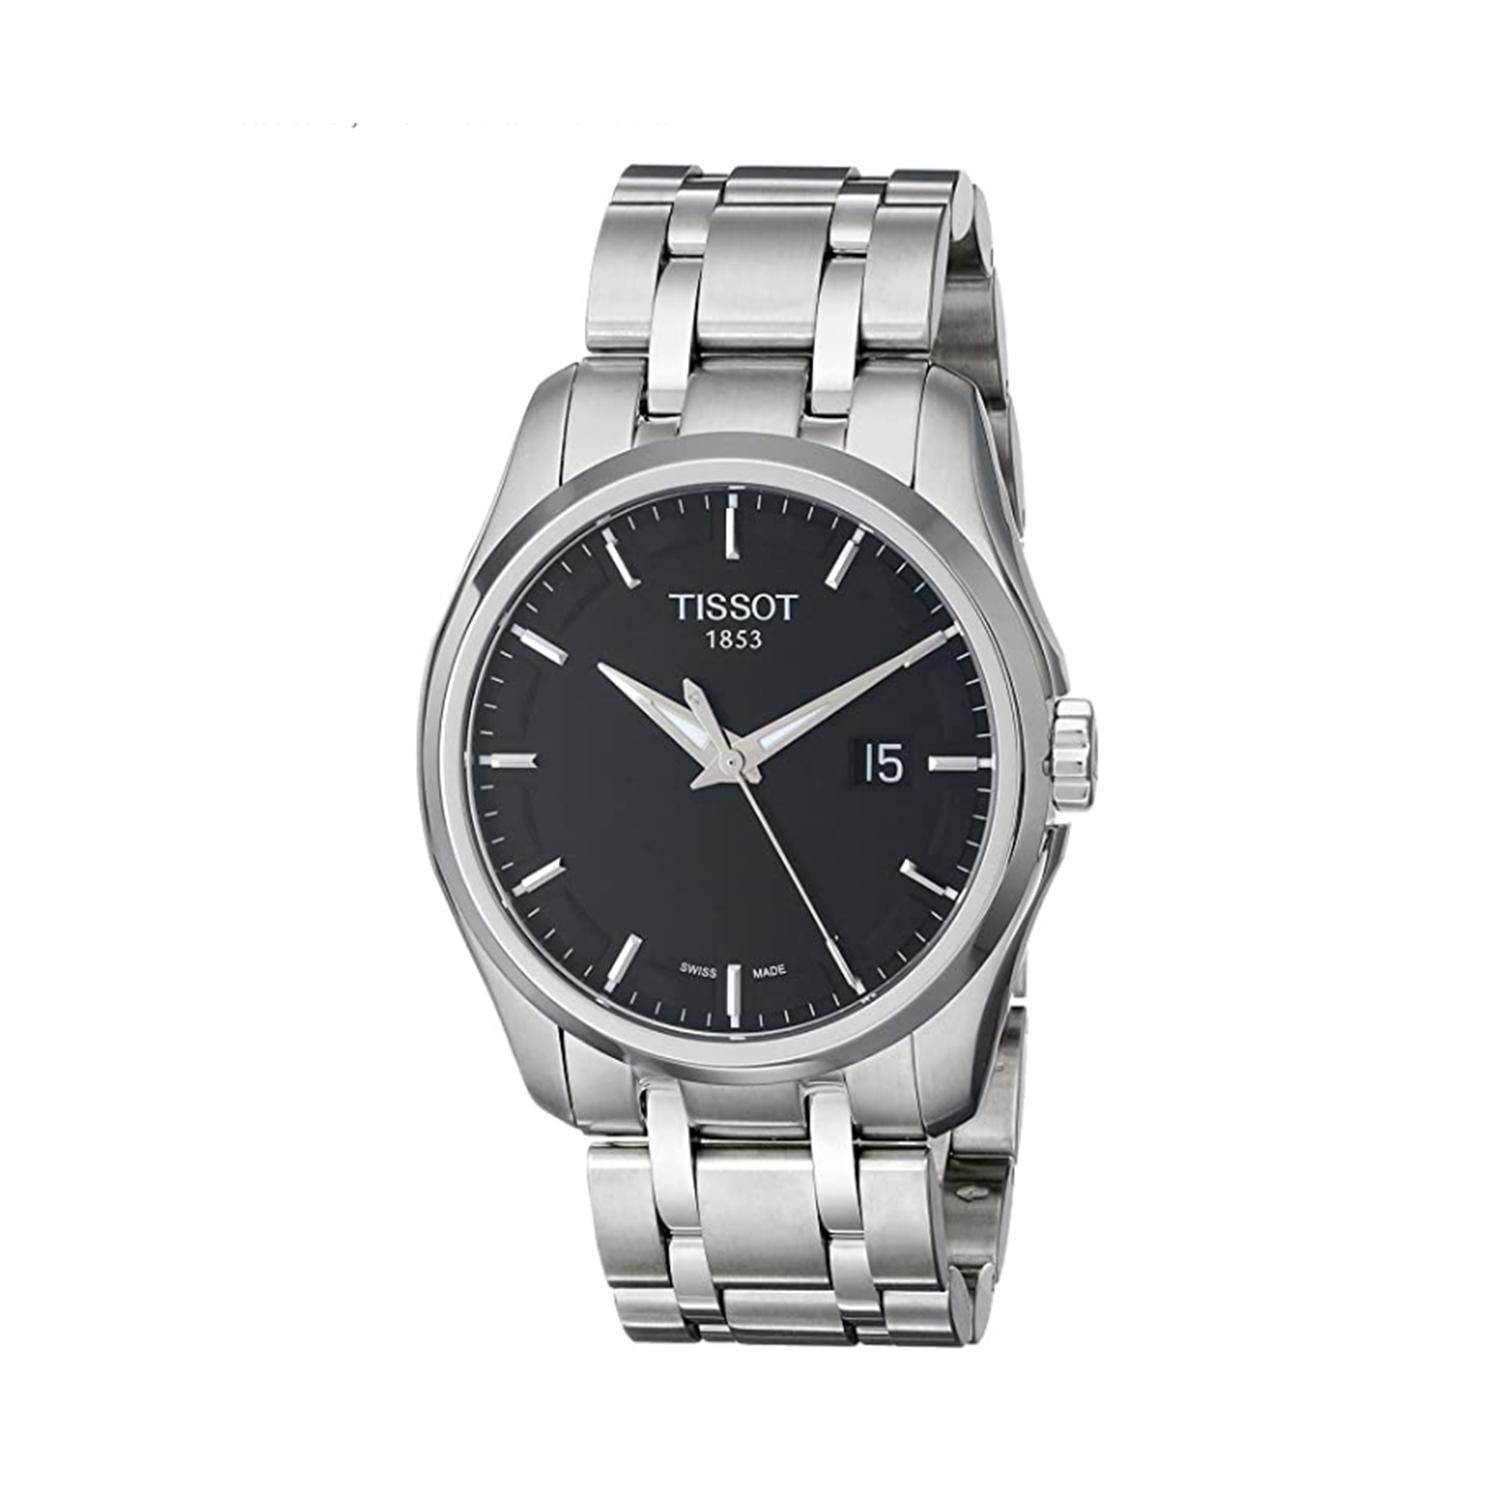 Tissot Couturier Steel Black Dial Quartz Men's Watch T035.410.11.051.00 1